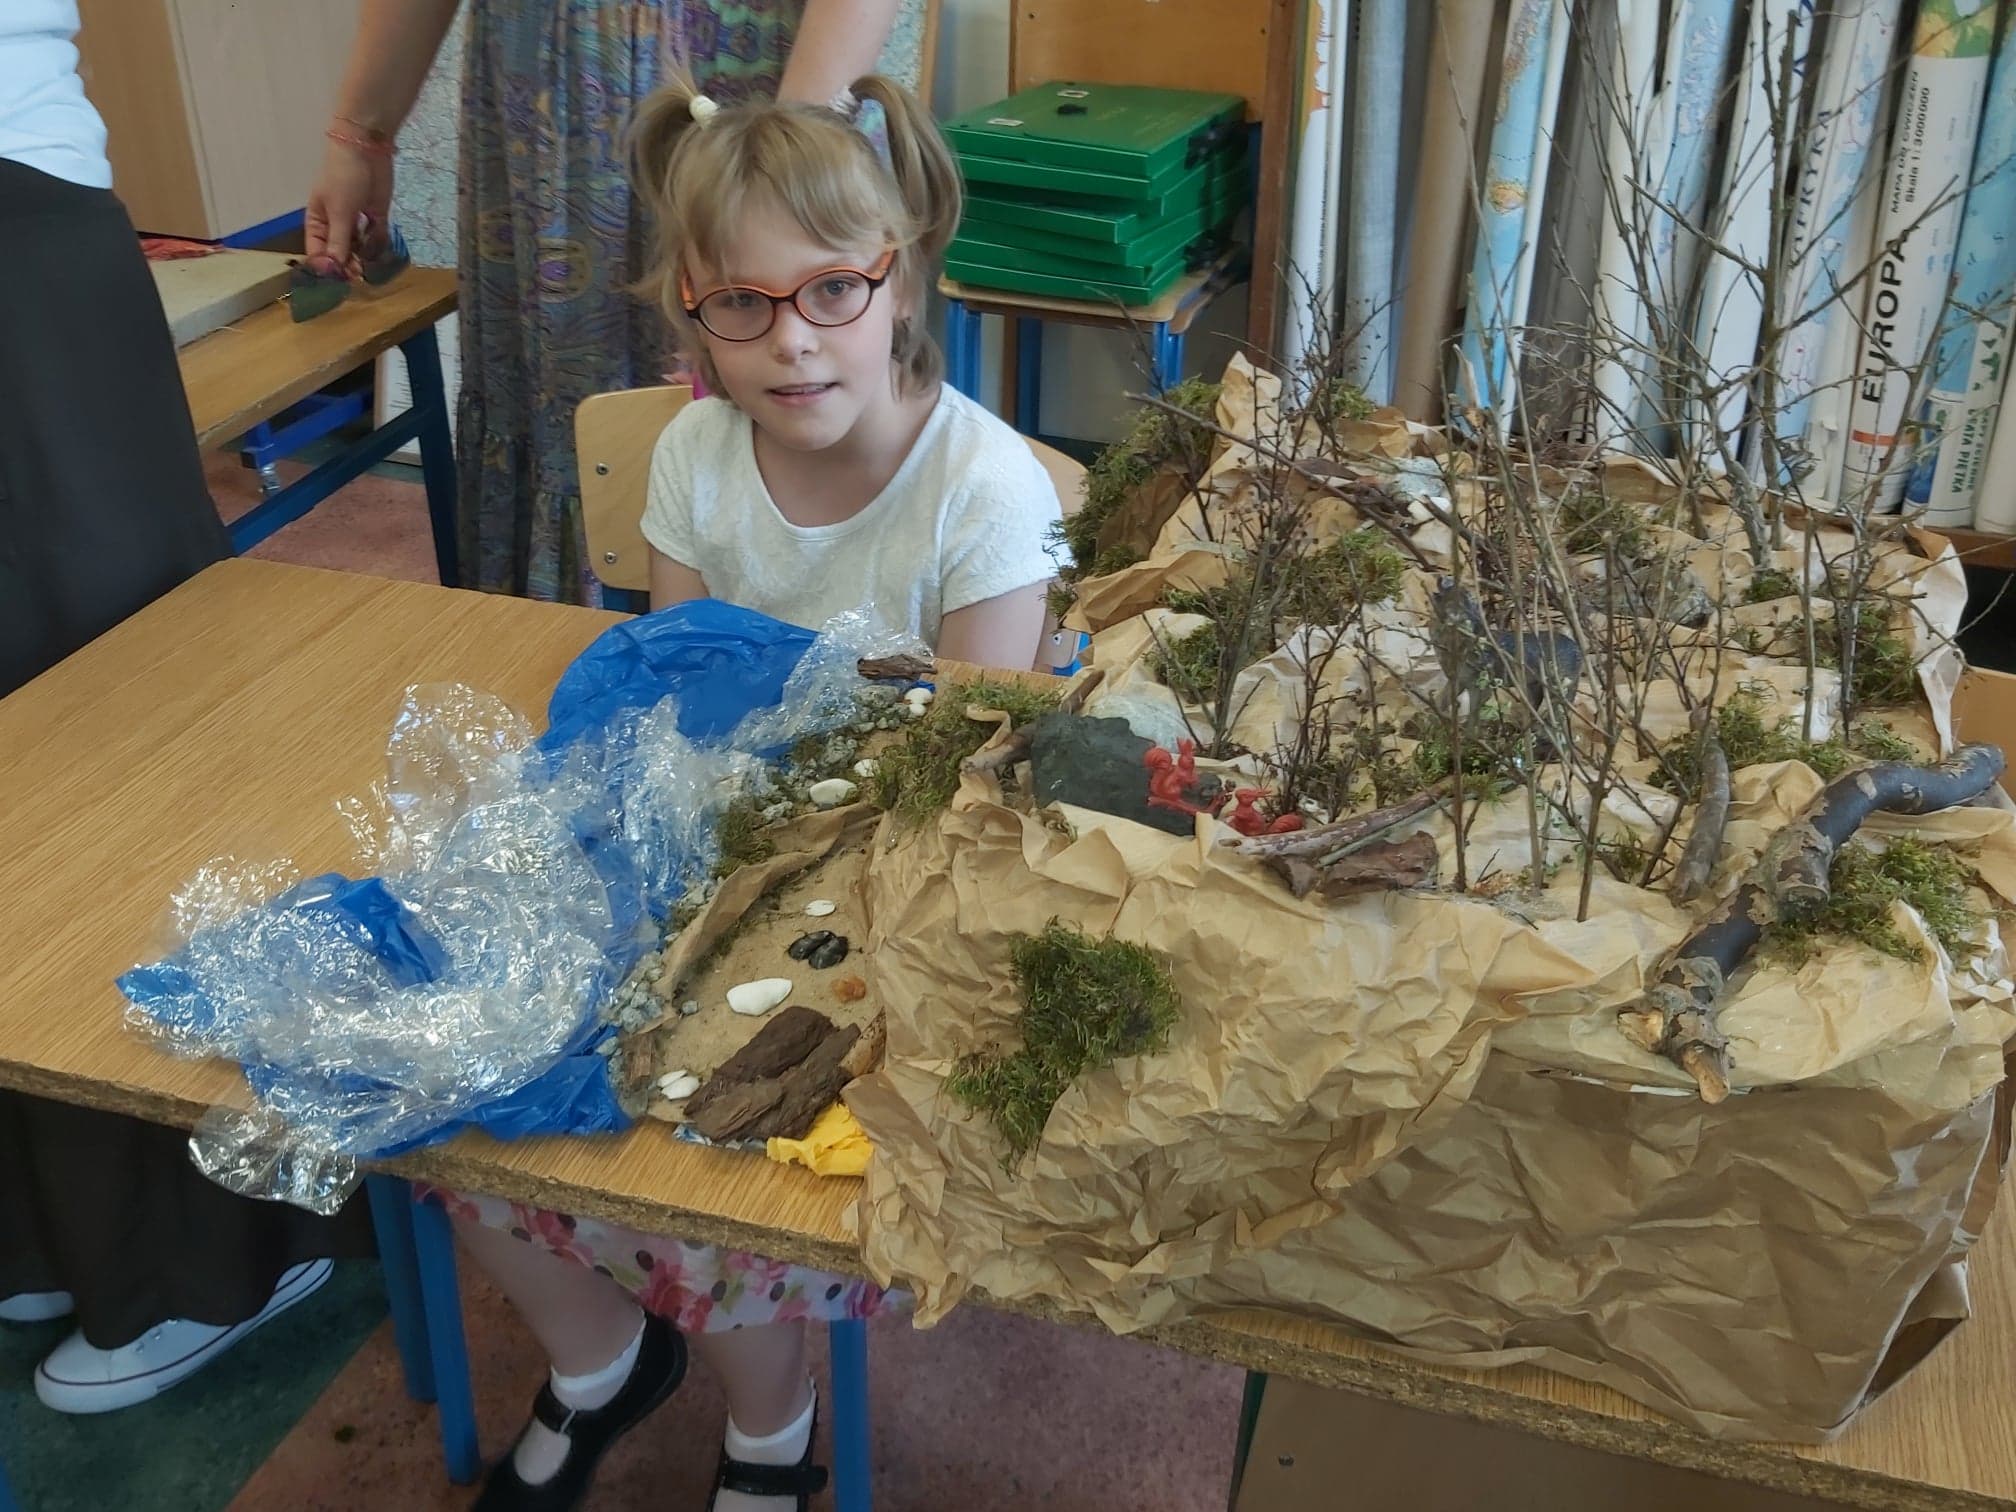 Kaja dumnie prezentuje swój model wybrzeża klifowego, w którym woda wykonana została z foli, na brzegu leżą kamienie, muszelki i kora, na klifie znajdują się drzewka wykonane z gałązek a nawet plastikowe zwierzęta (wiewiórki i wilk)